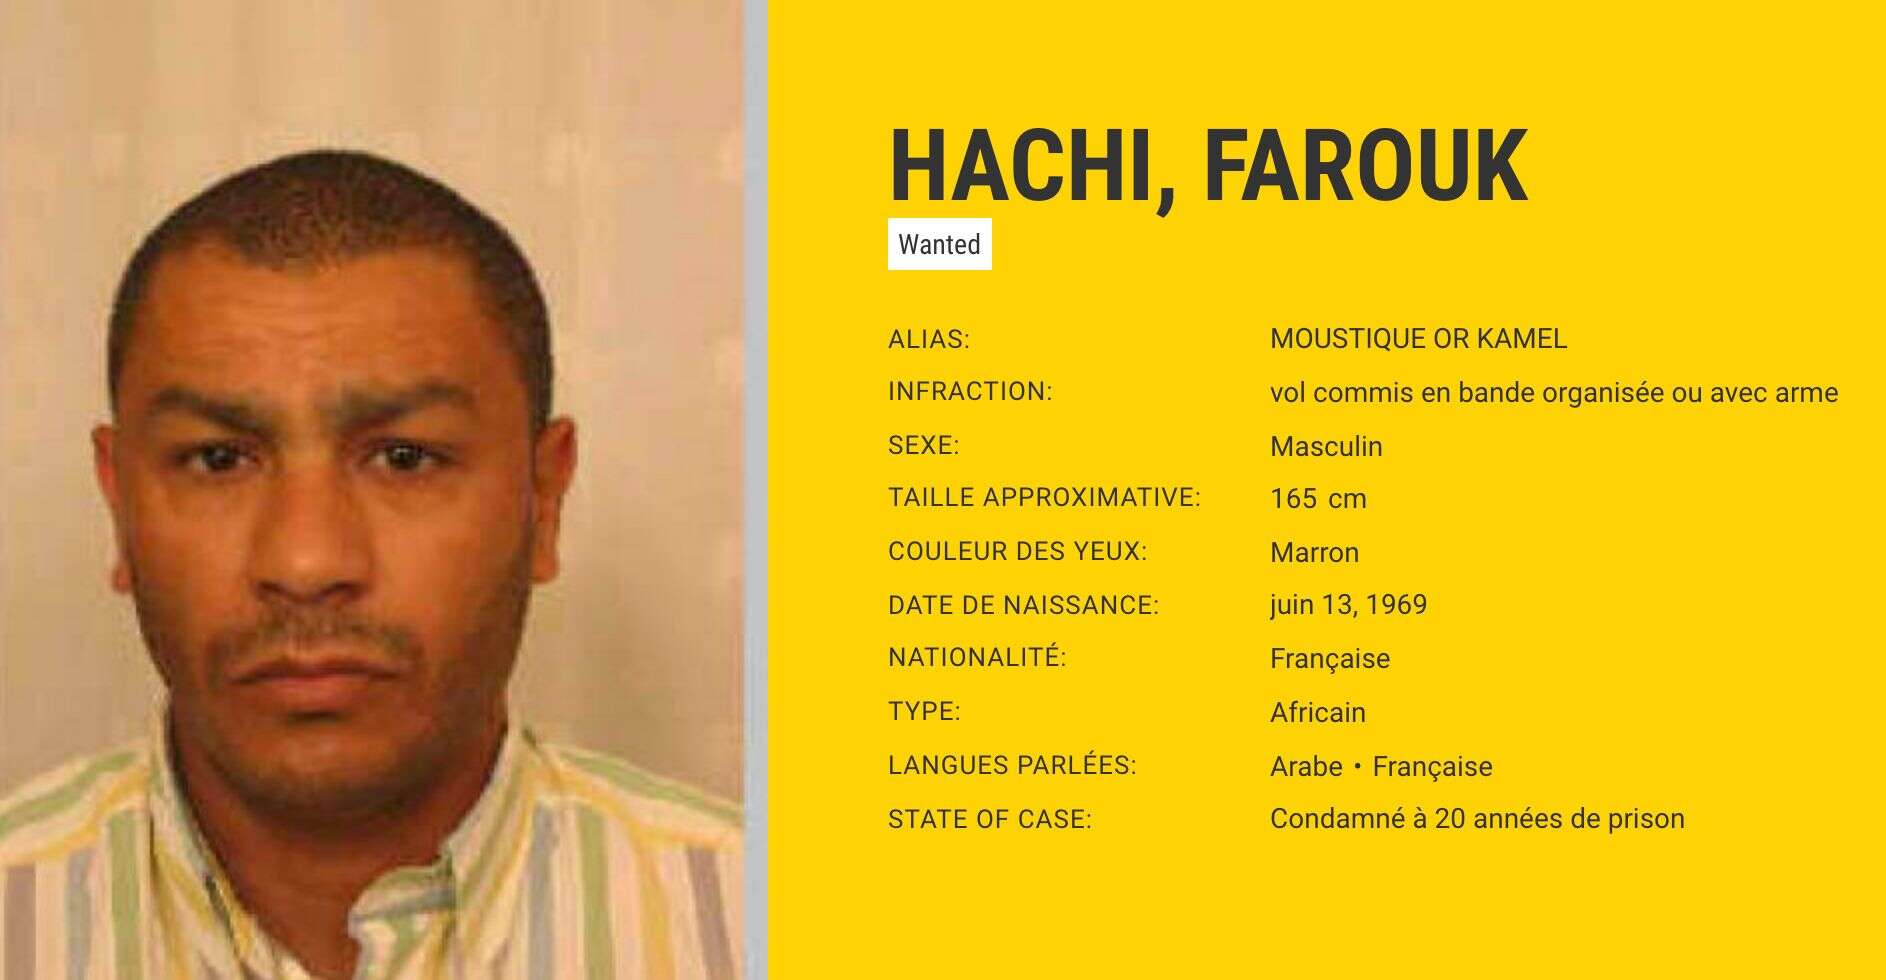 Farouk Hachi, premier français le plus recherché d'Europe après l'interpellation de Redoine Faïd